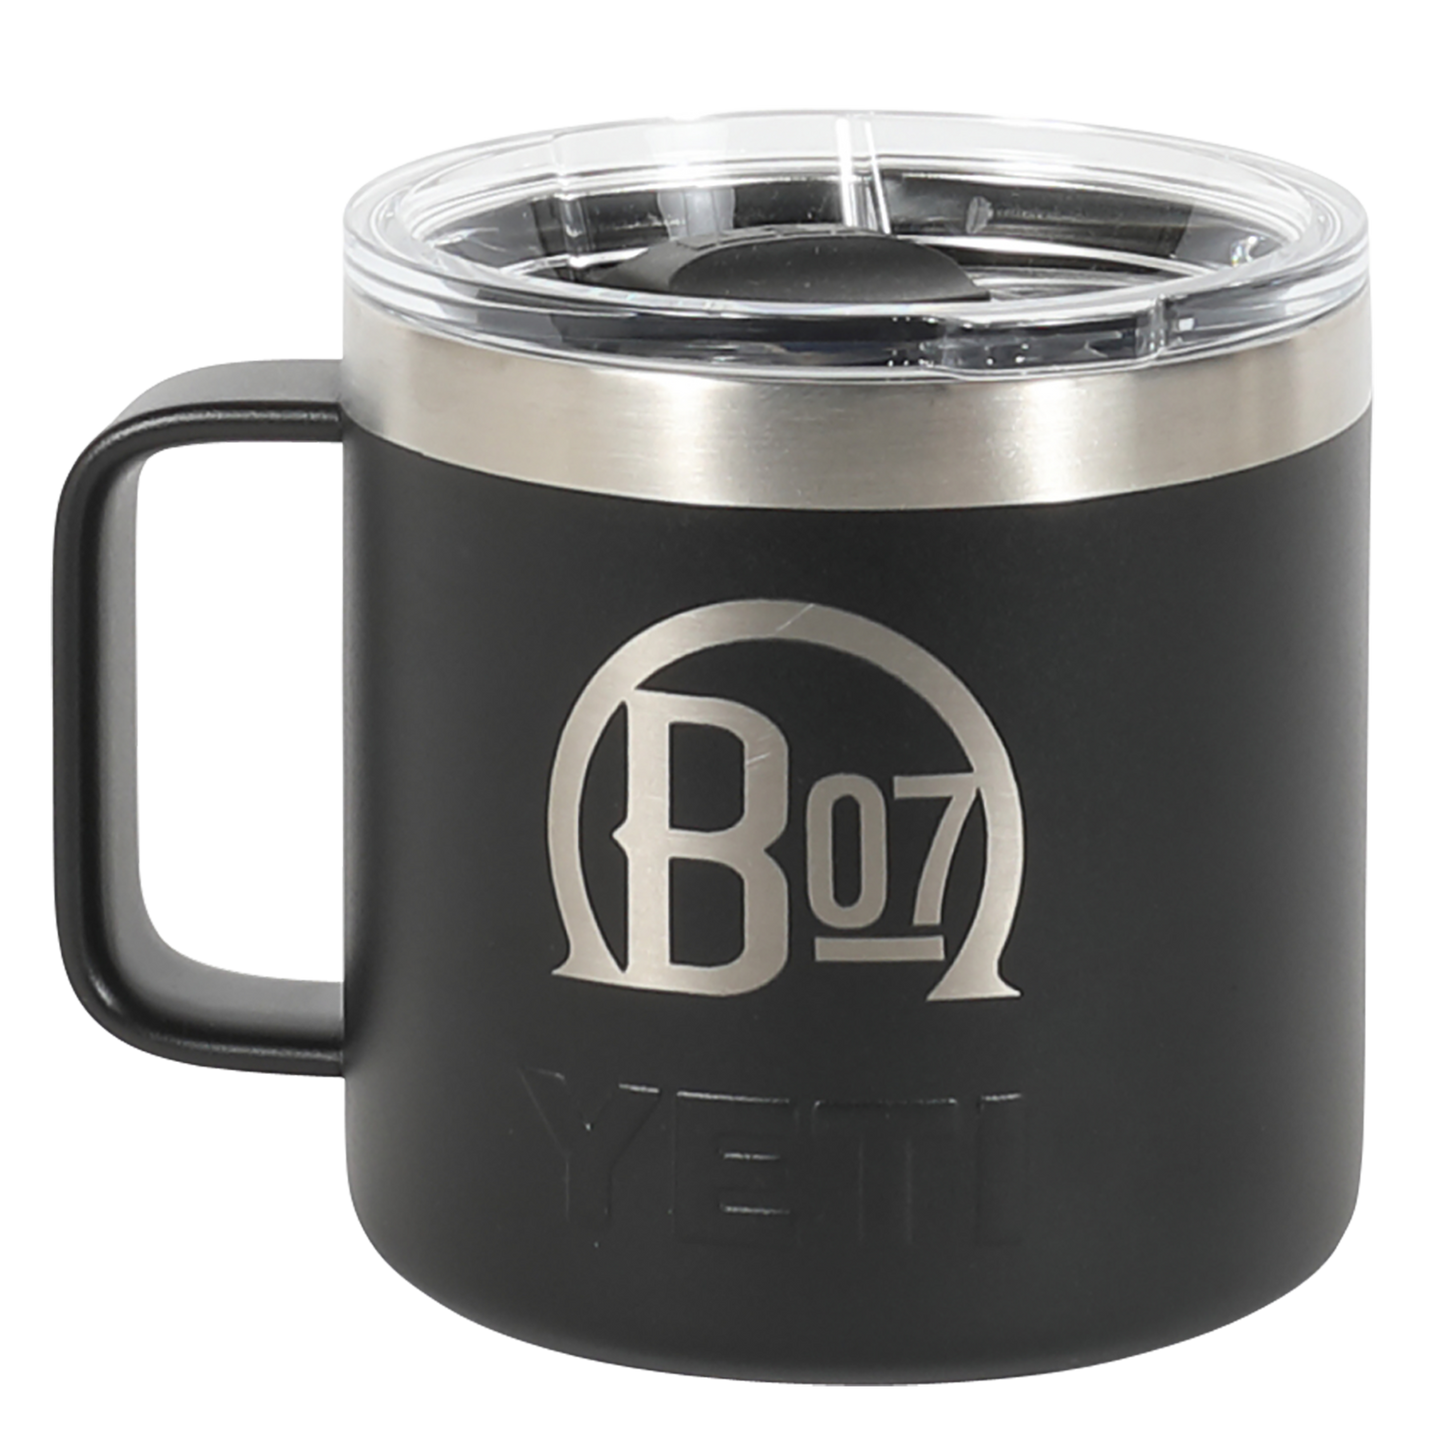 Yeti Rambler 14 Oz Mug with Magslider Lid B-Line 07 Edition